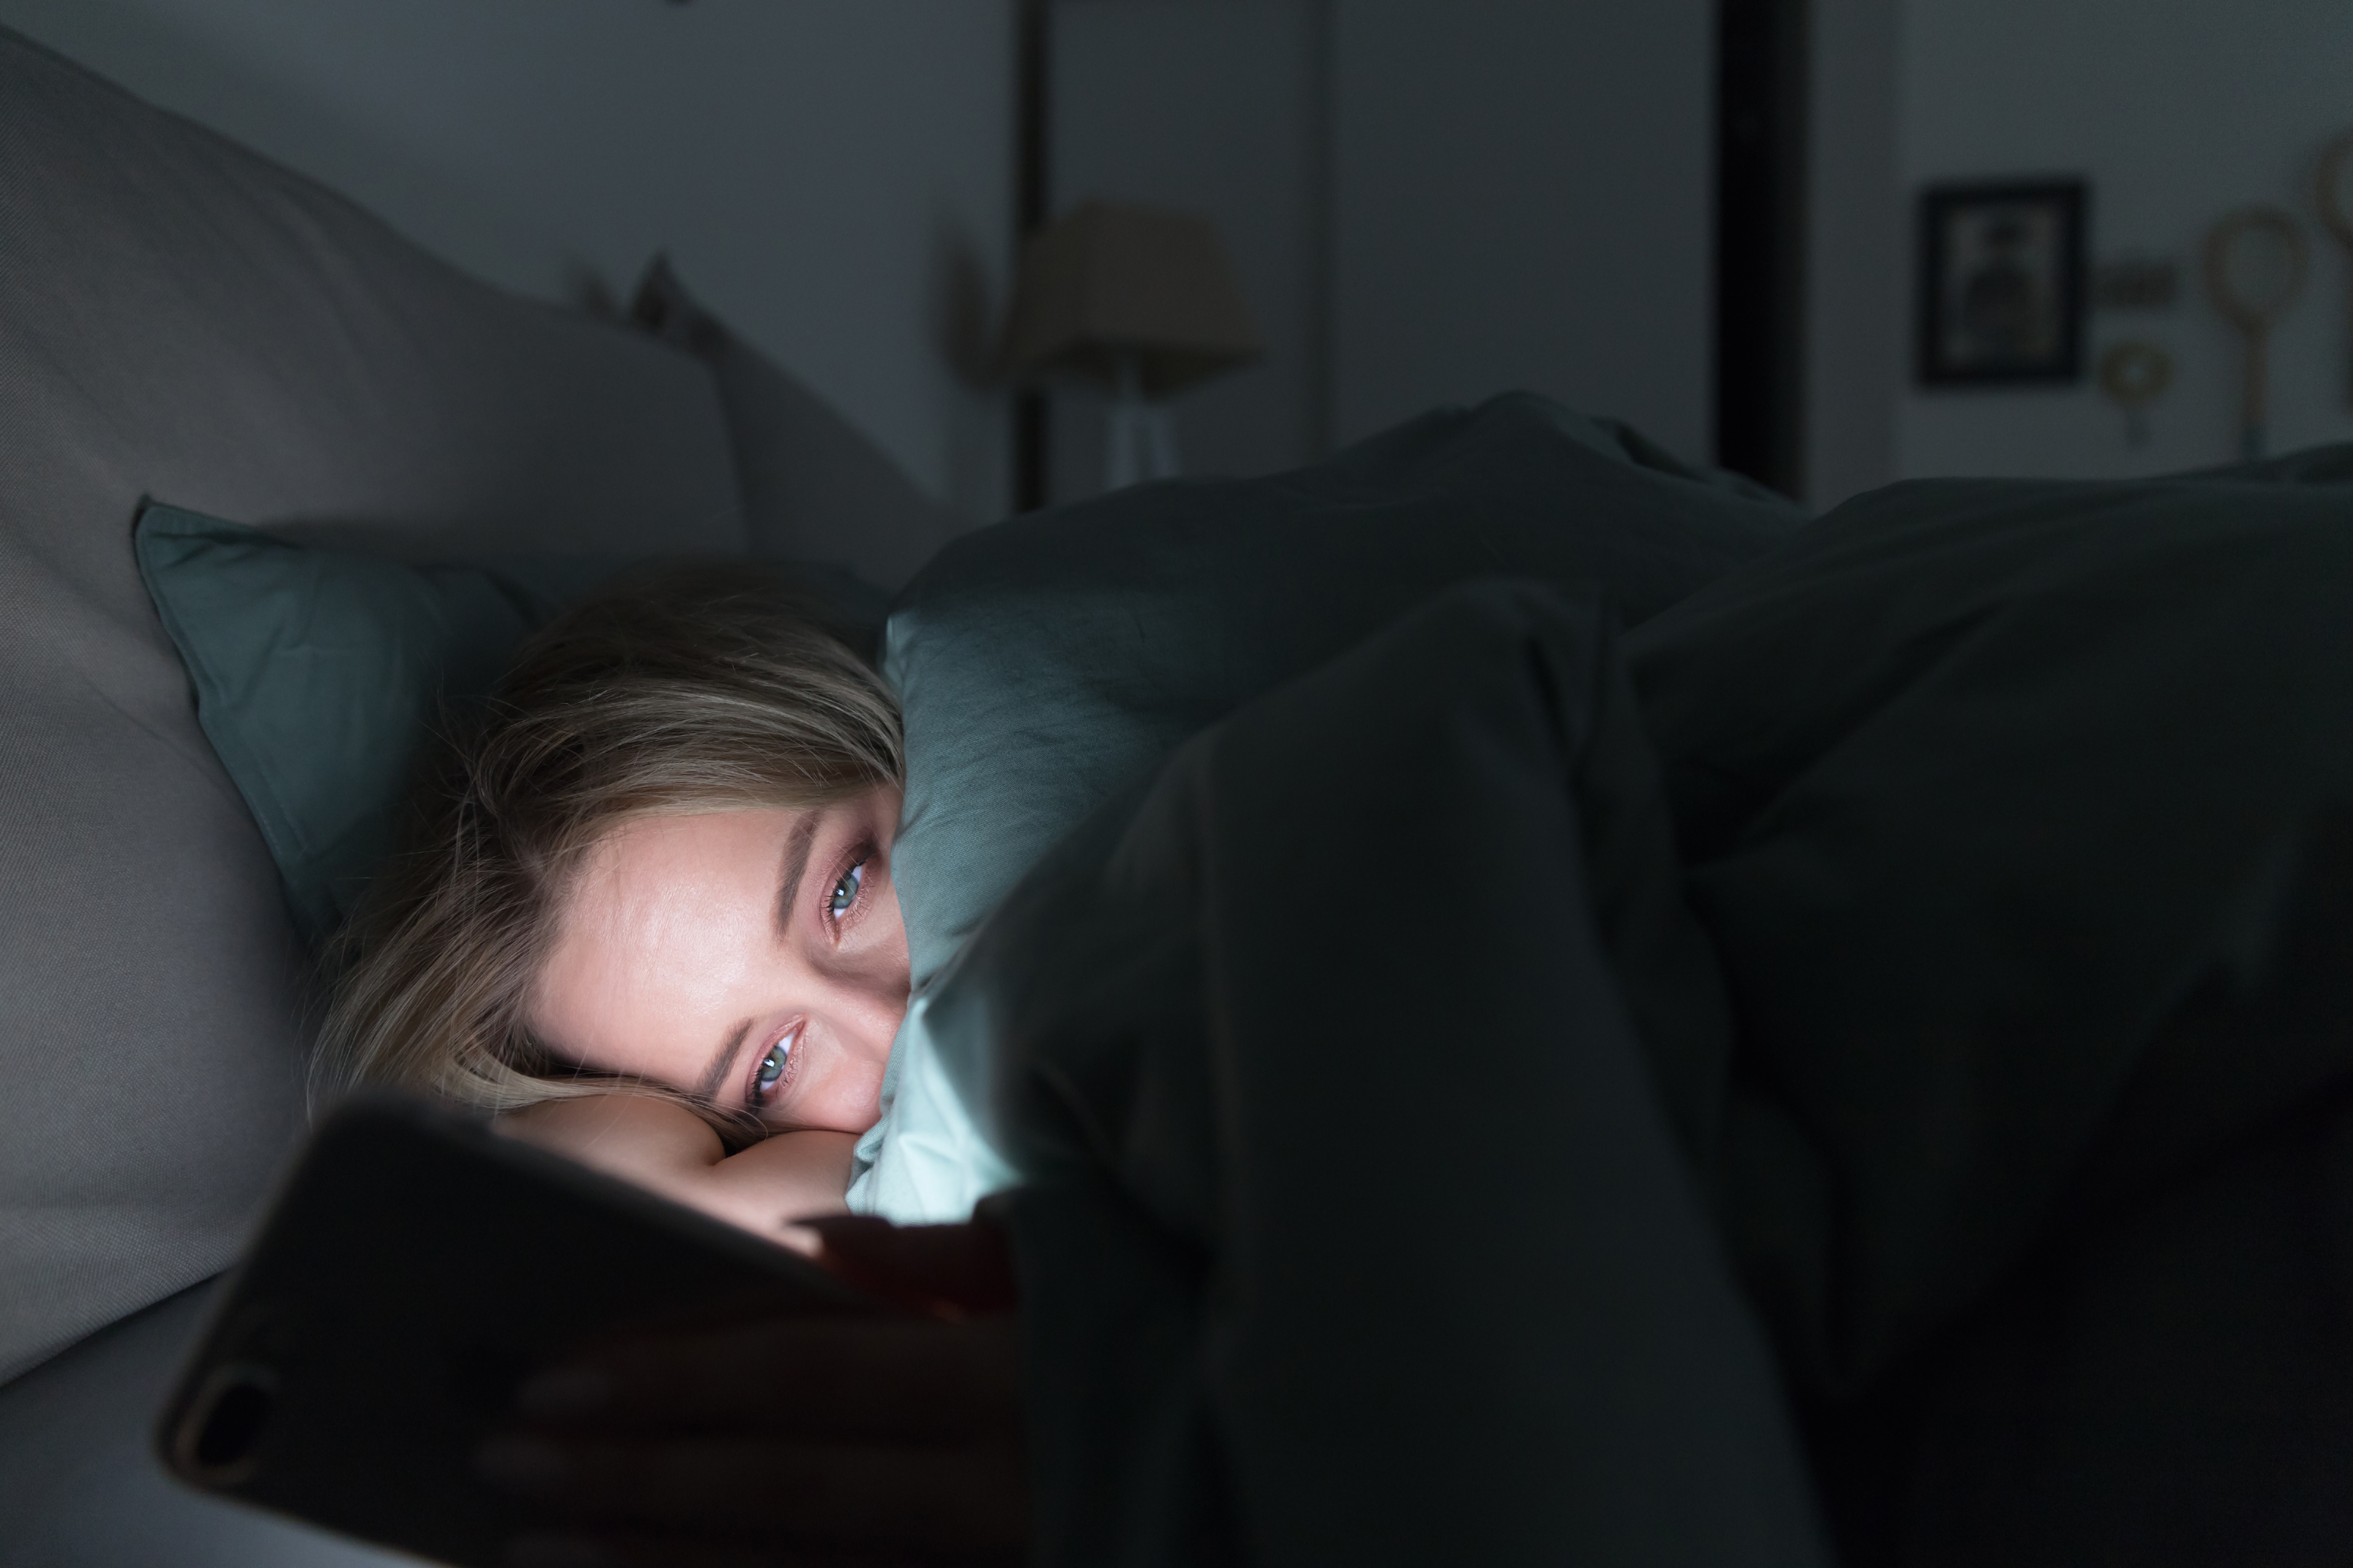 No dormir bien es perjudicial para la salud.